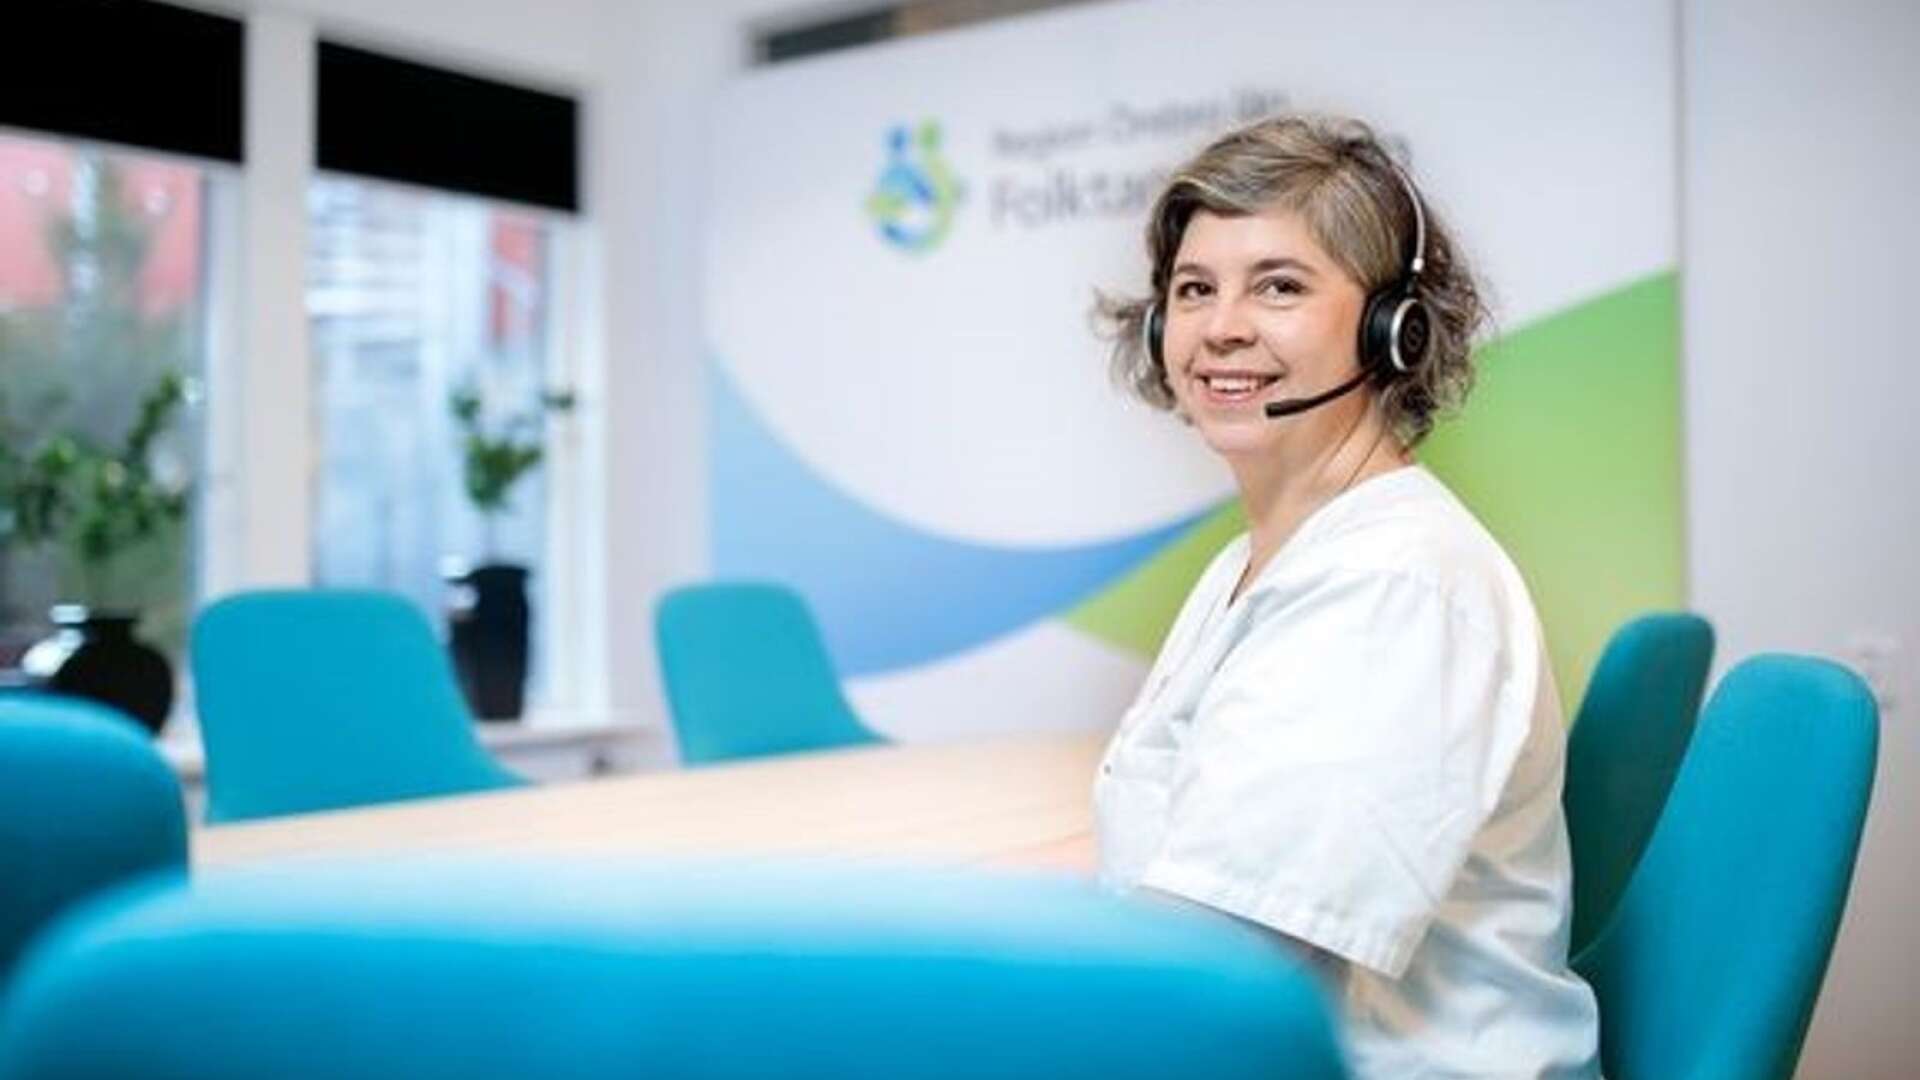 Cecilia Mattsson, tandhygienist och certifierad hälsocoach på Folktandvården Region Örebro län.